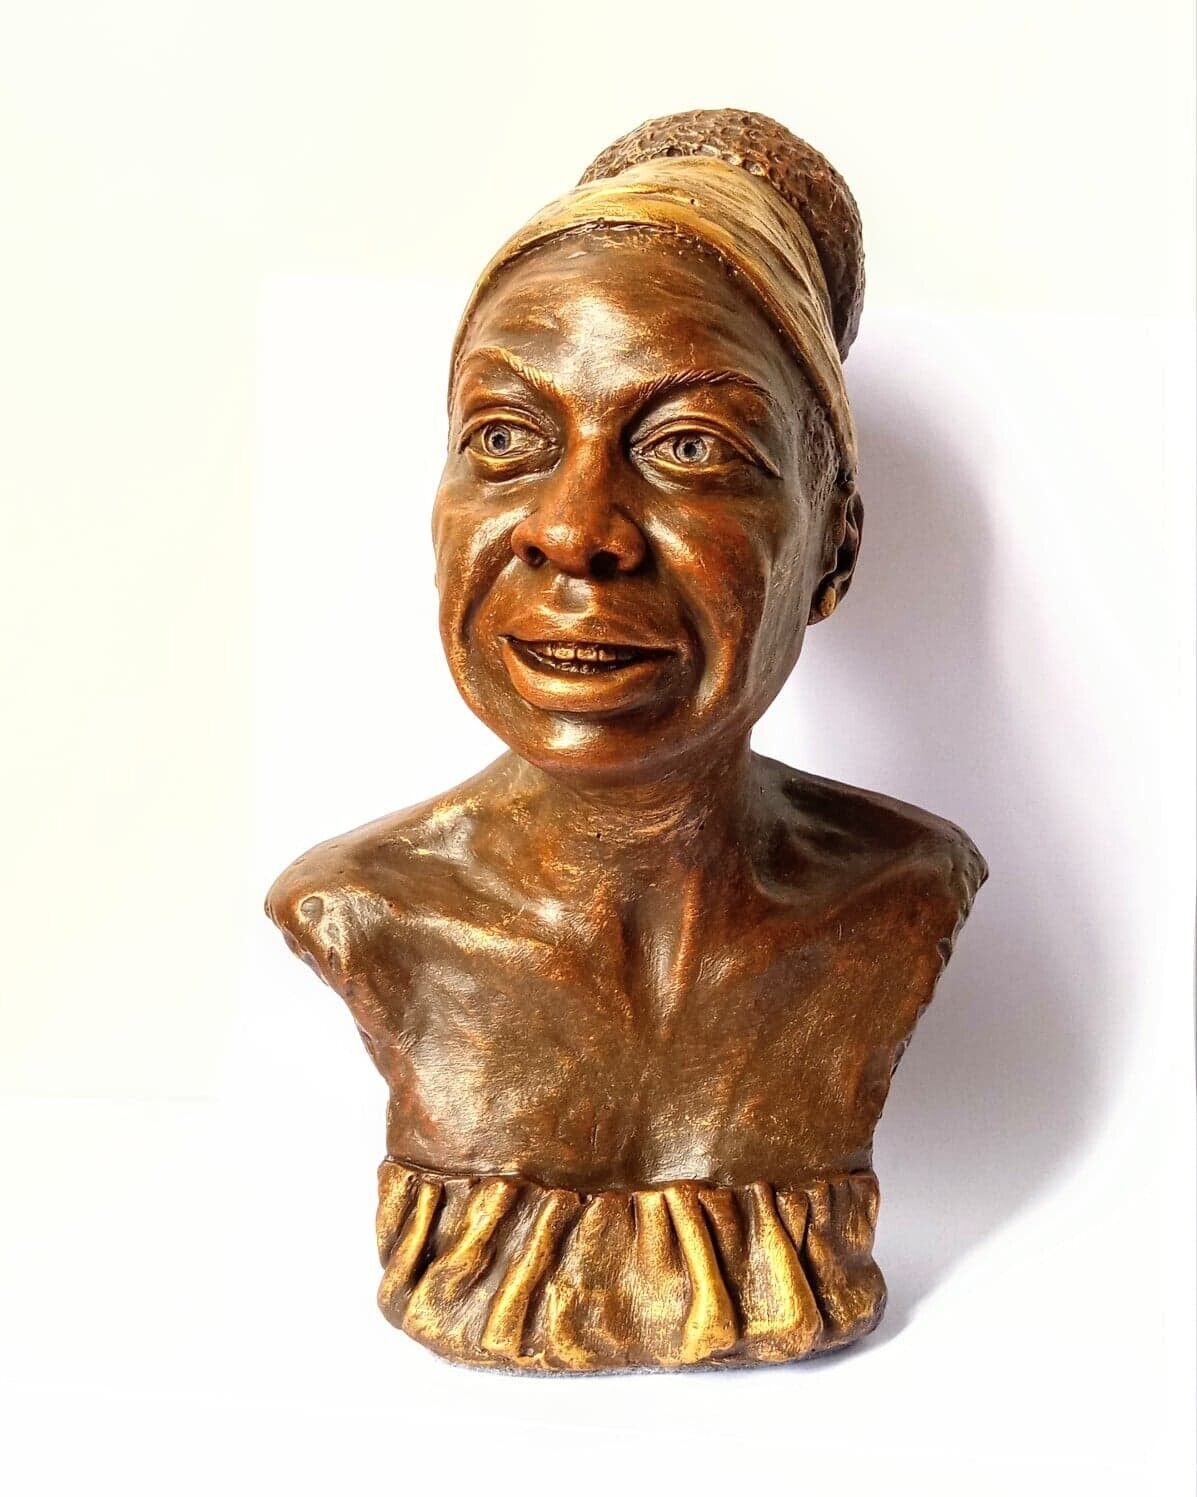 Nina Simone Bust Sculpture Figure